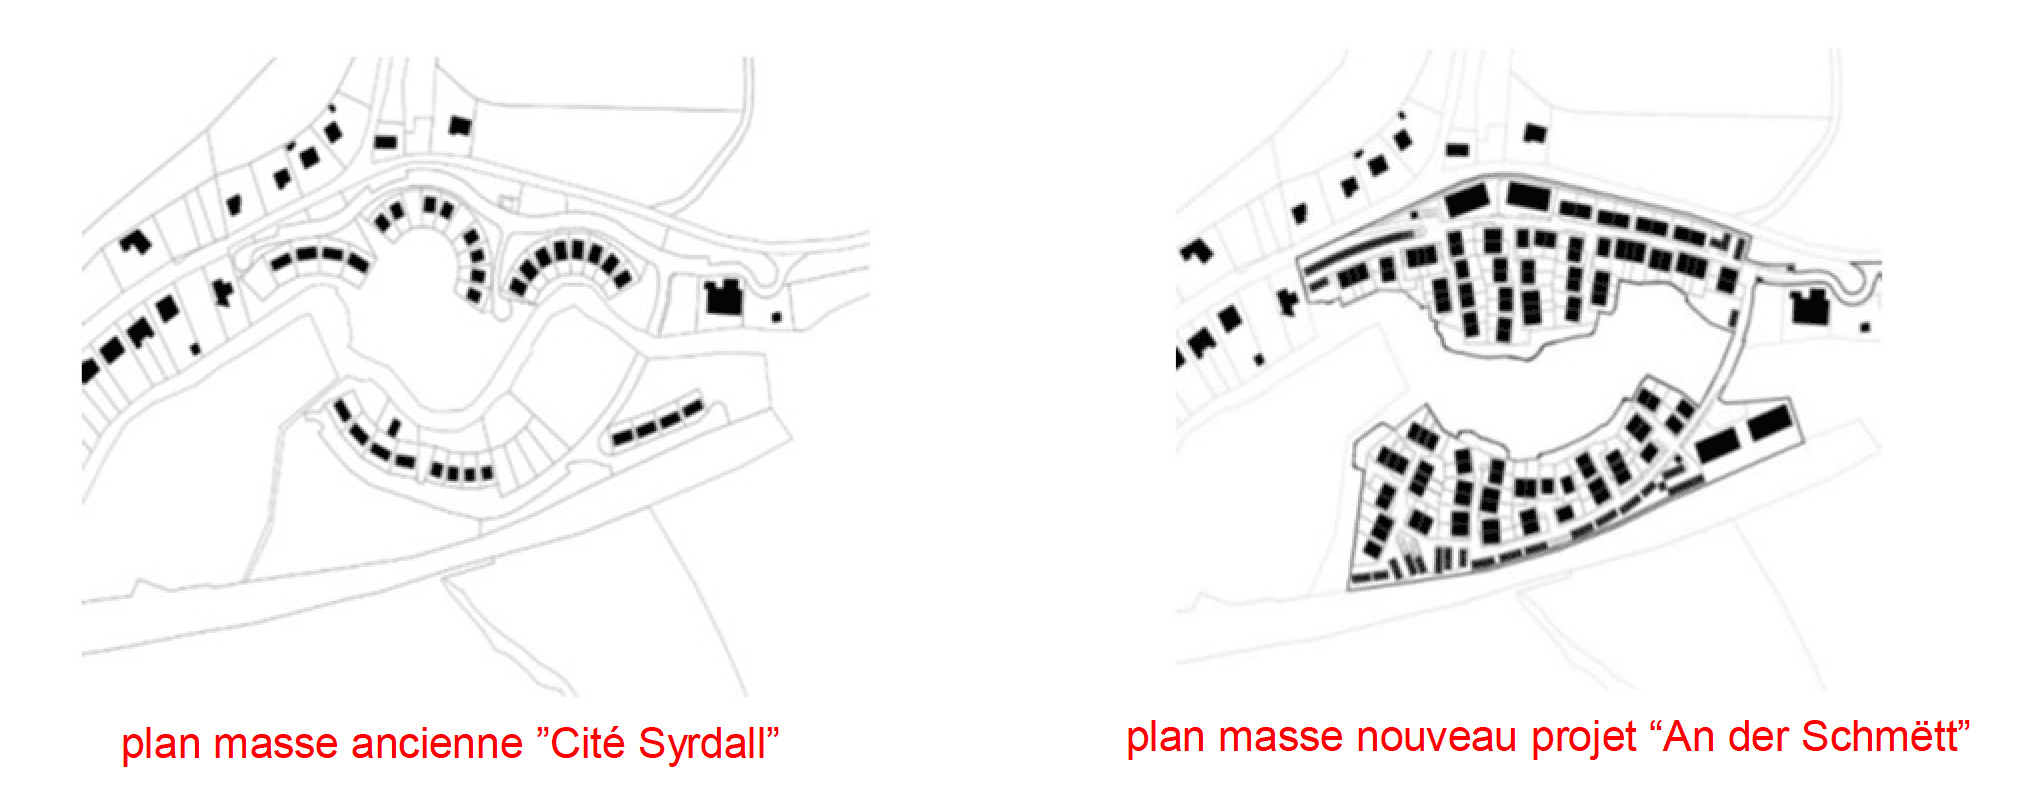 Comparaison des plans masse entre la cité Syrdall et le projet An der Schmëtt. (Illustration: Fonds du logement)